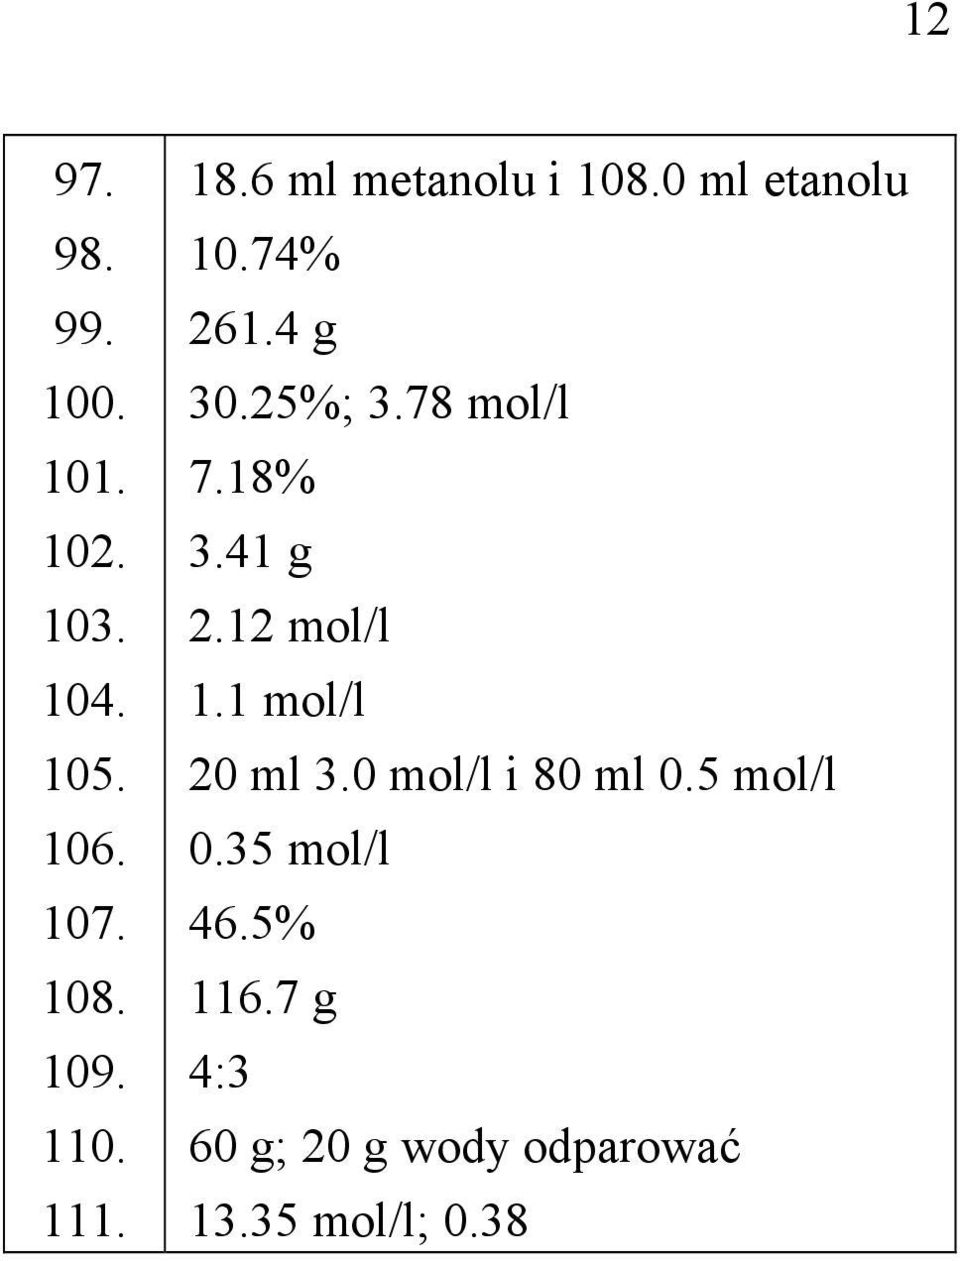 78 mol/l 7.18% 3.41 g 2.12 mol/l 1.1 mol/l 20 ml 3.0 mol/l i 80 ml 0.